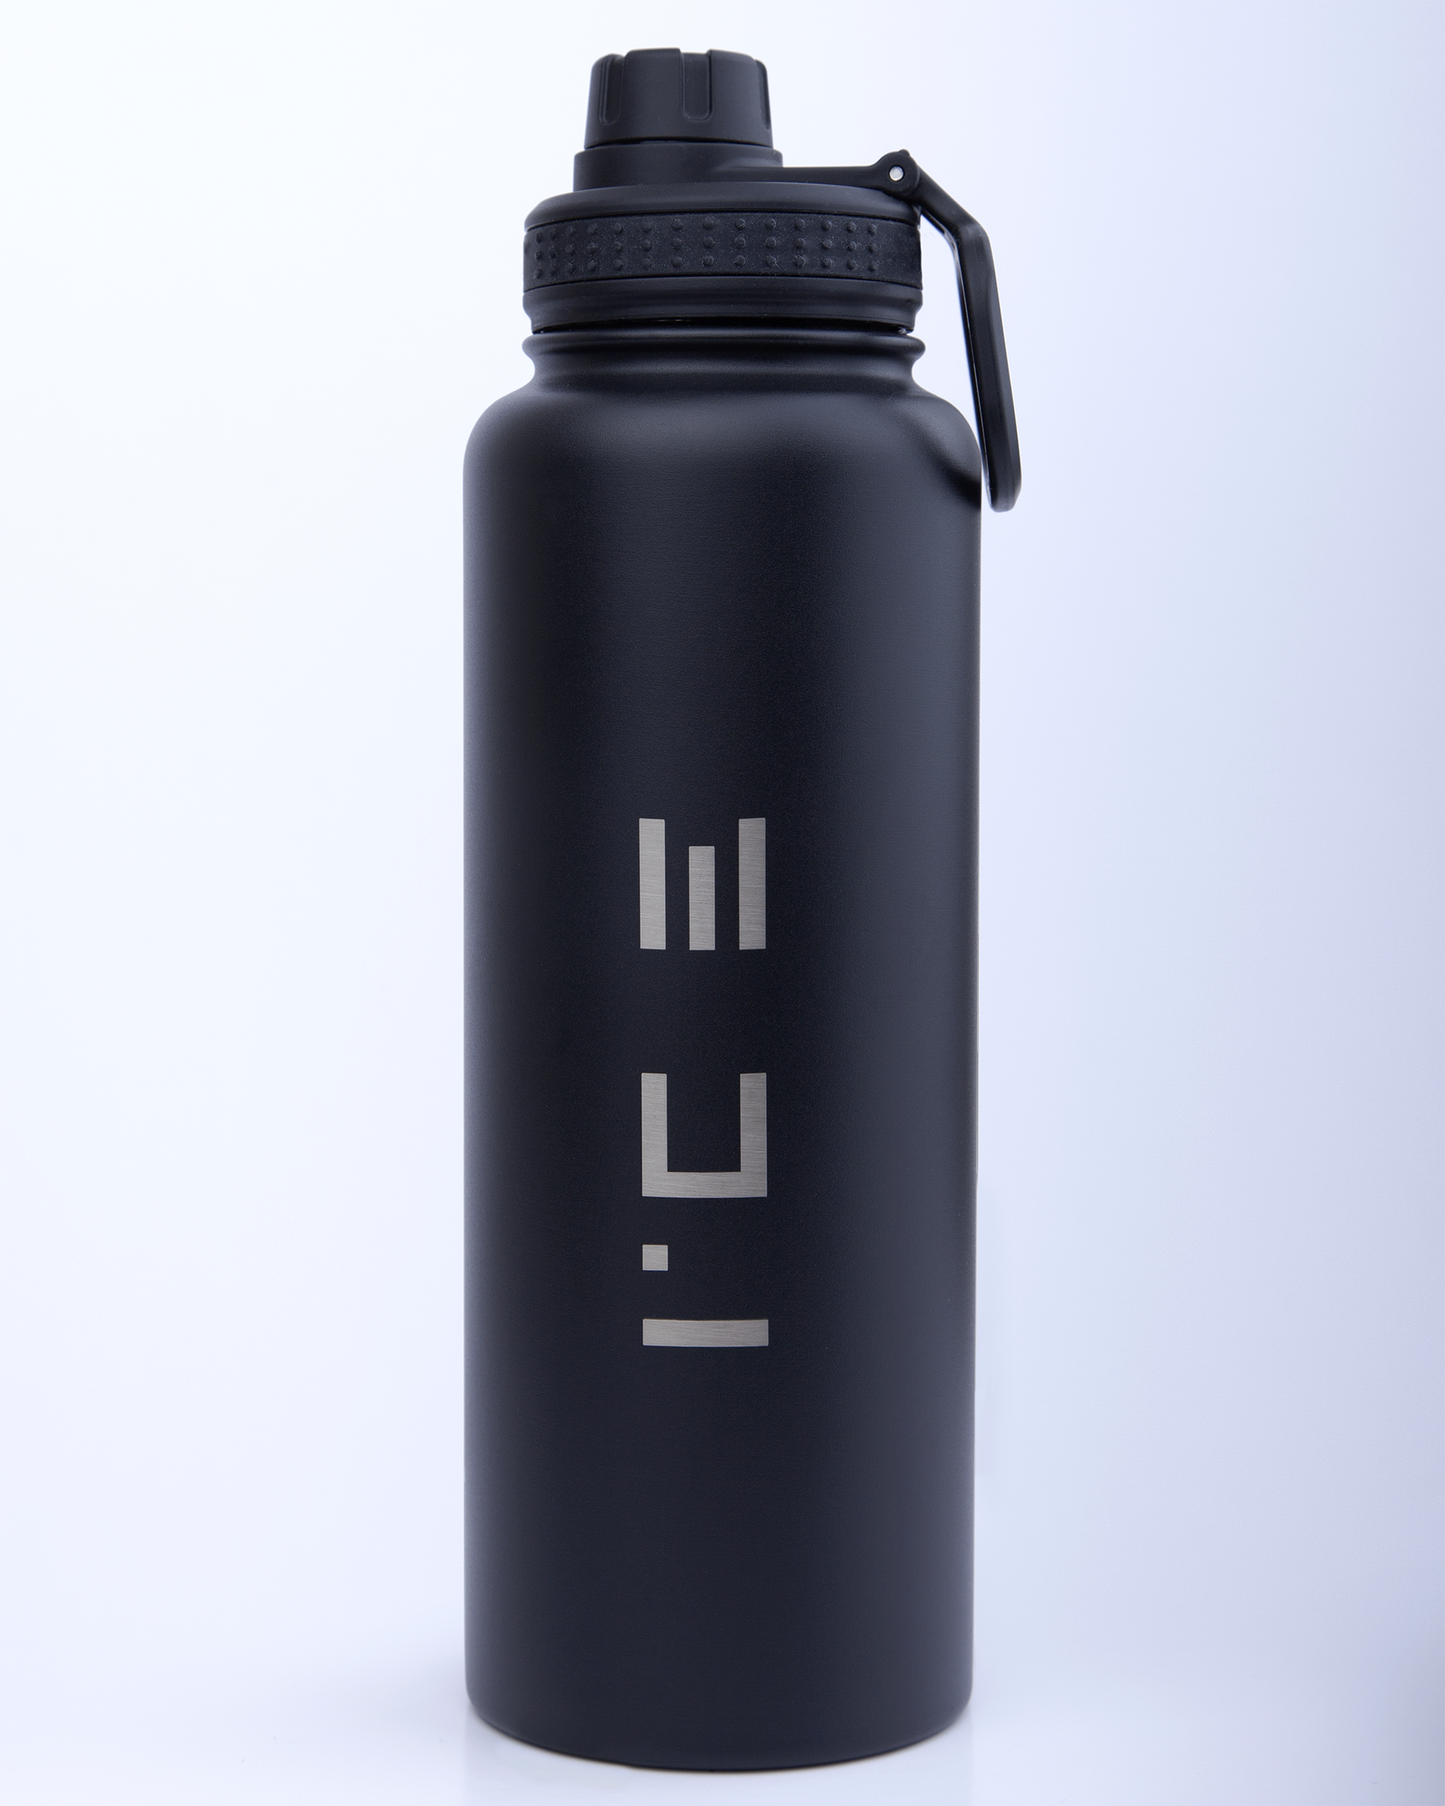 ICE Water Bottle in Black - 64 oz